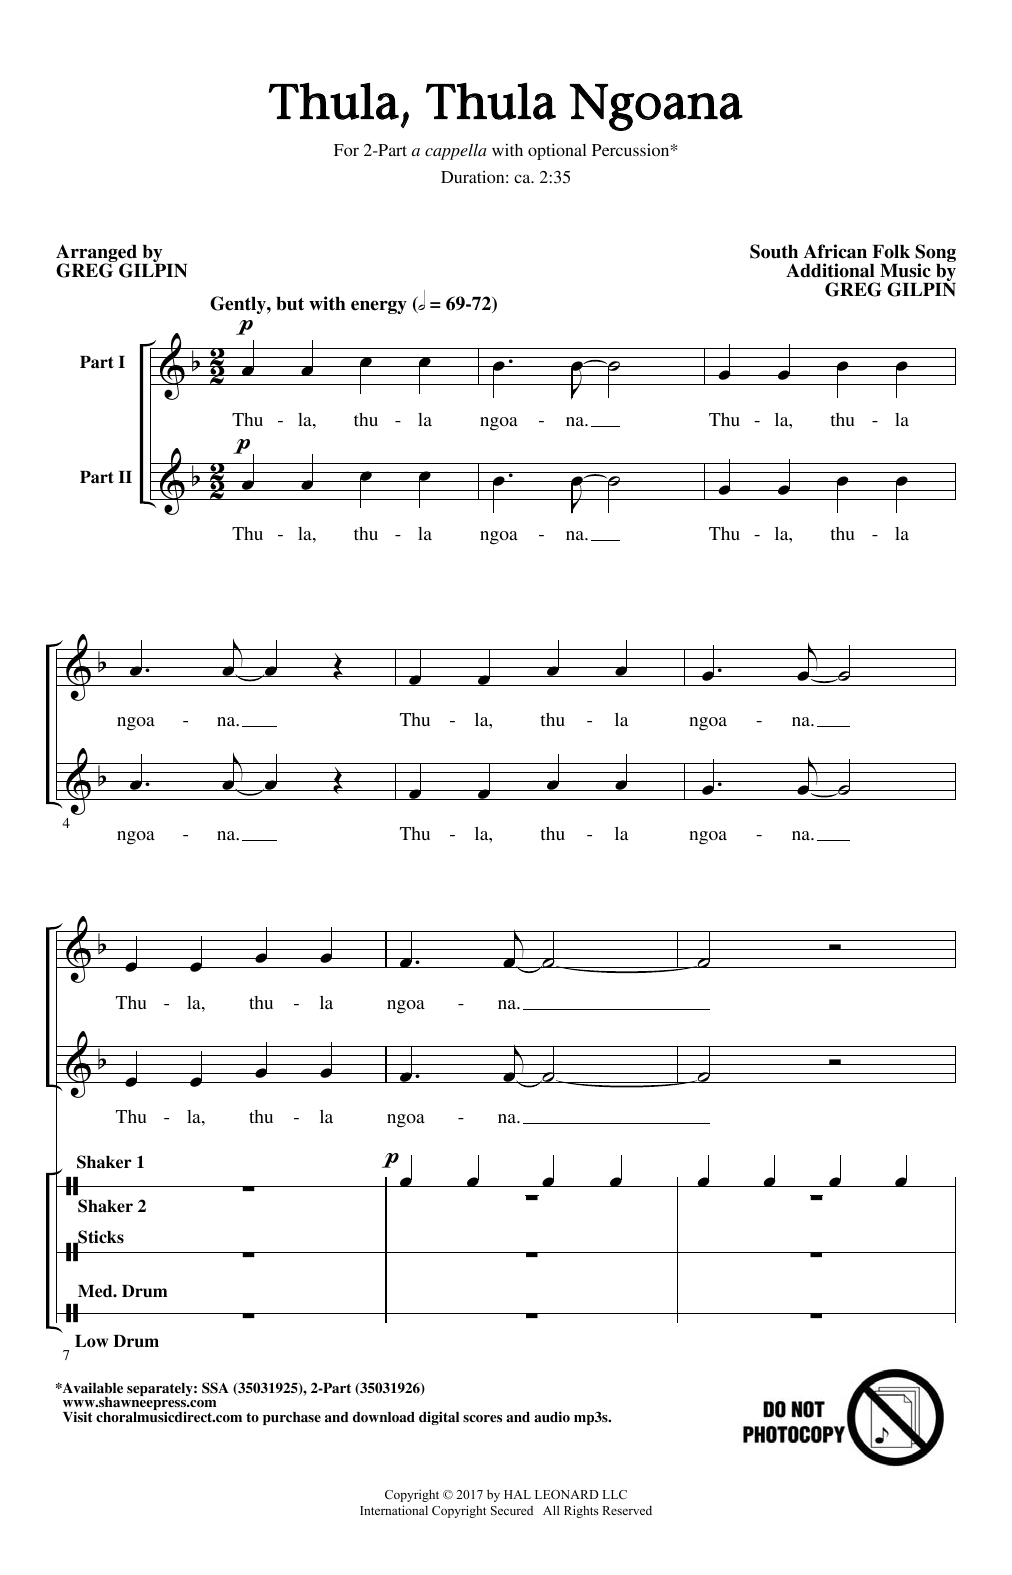 Greg Gilpin Thula Thula Ngoana Sheet Music Notes & Chords for 2-Part Choir - Download or Print PDF